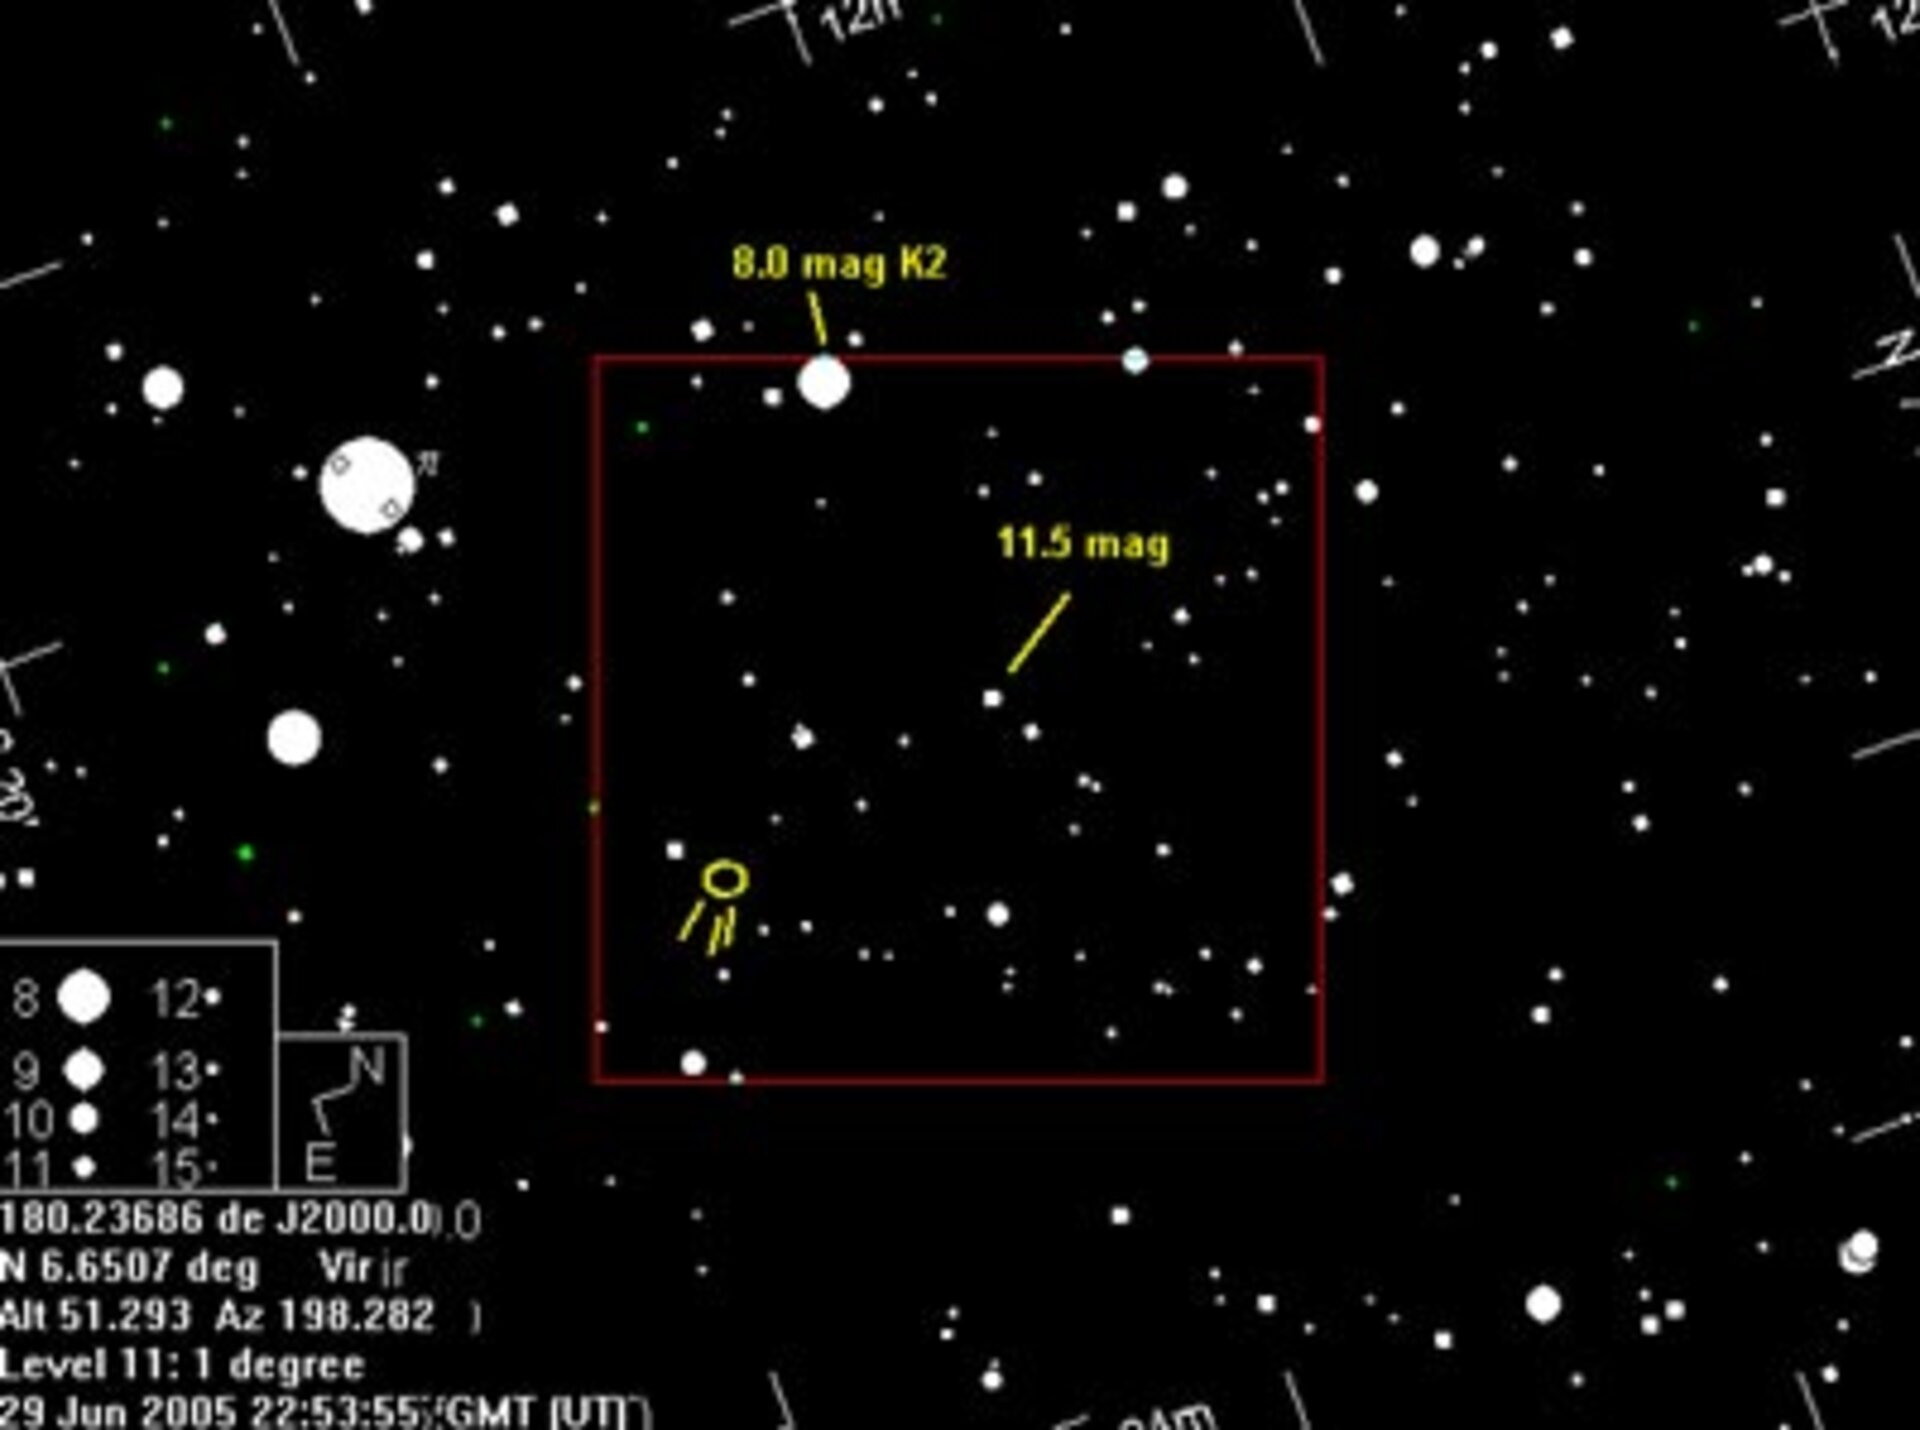 Location of Comet 9P/Tempel 1